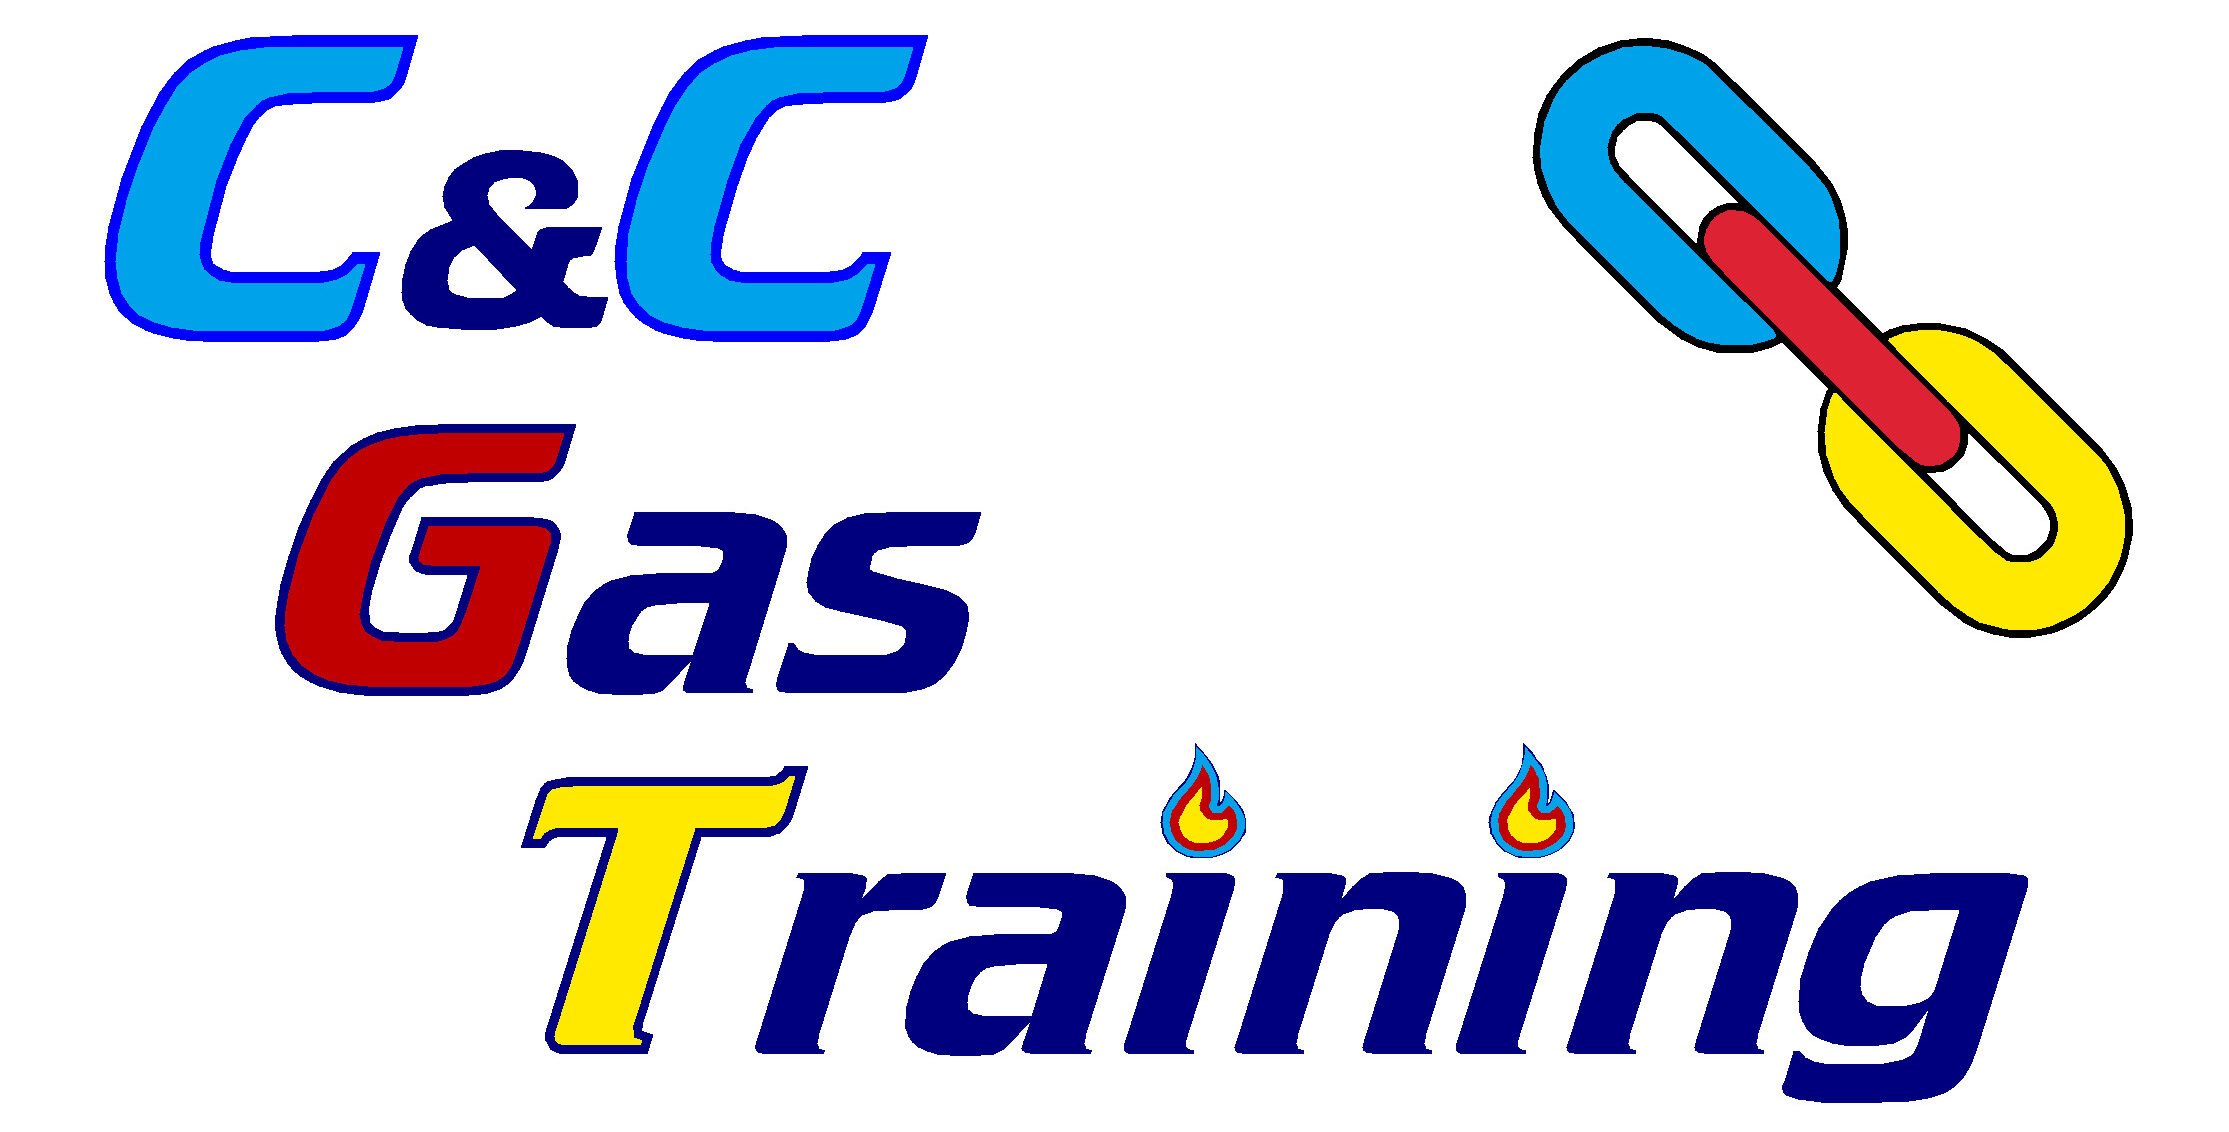 C&C Gas Training Ltd logo